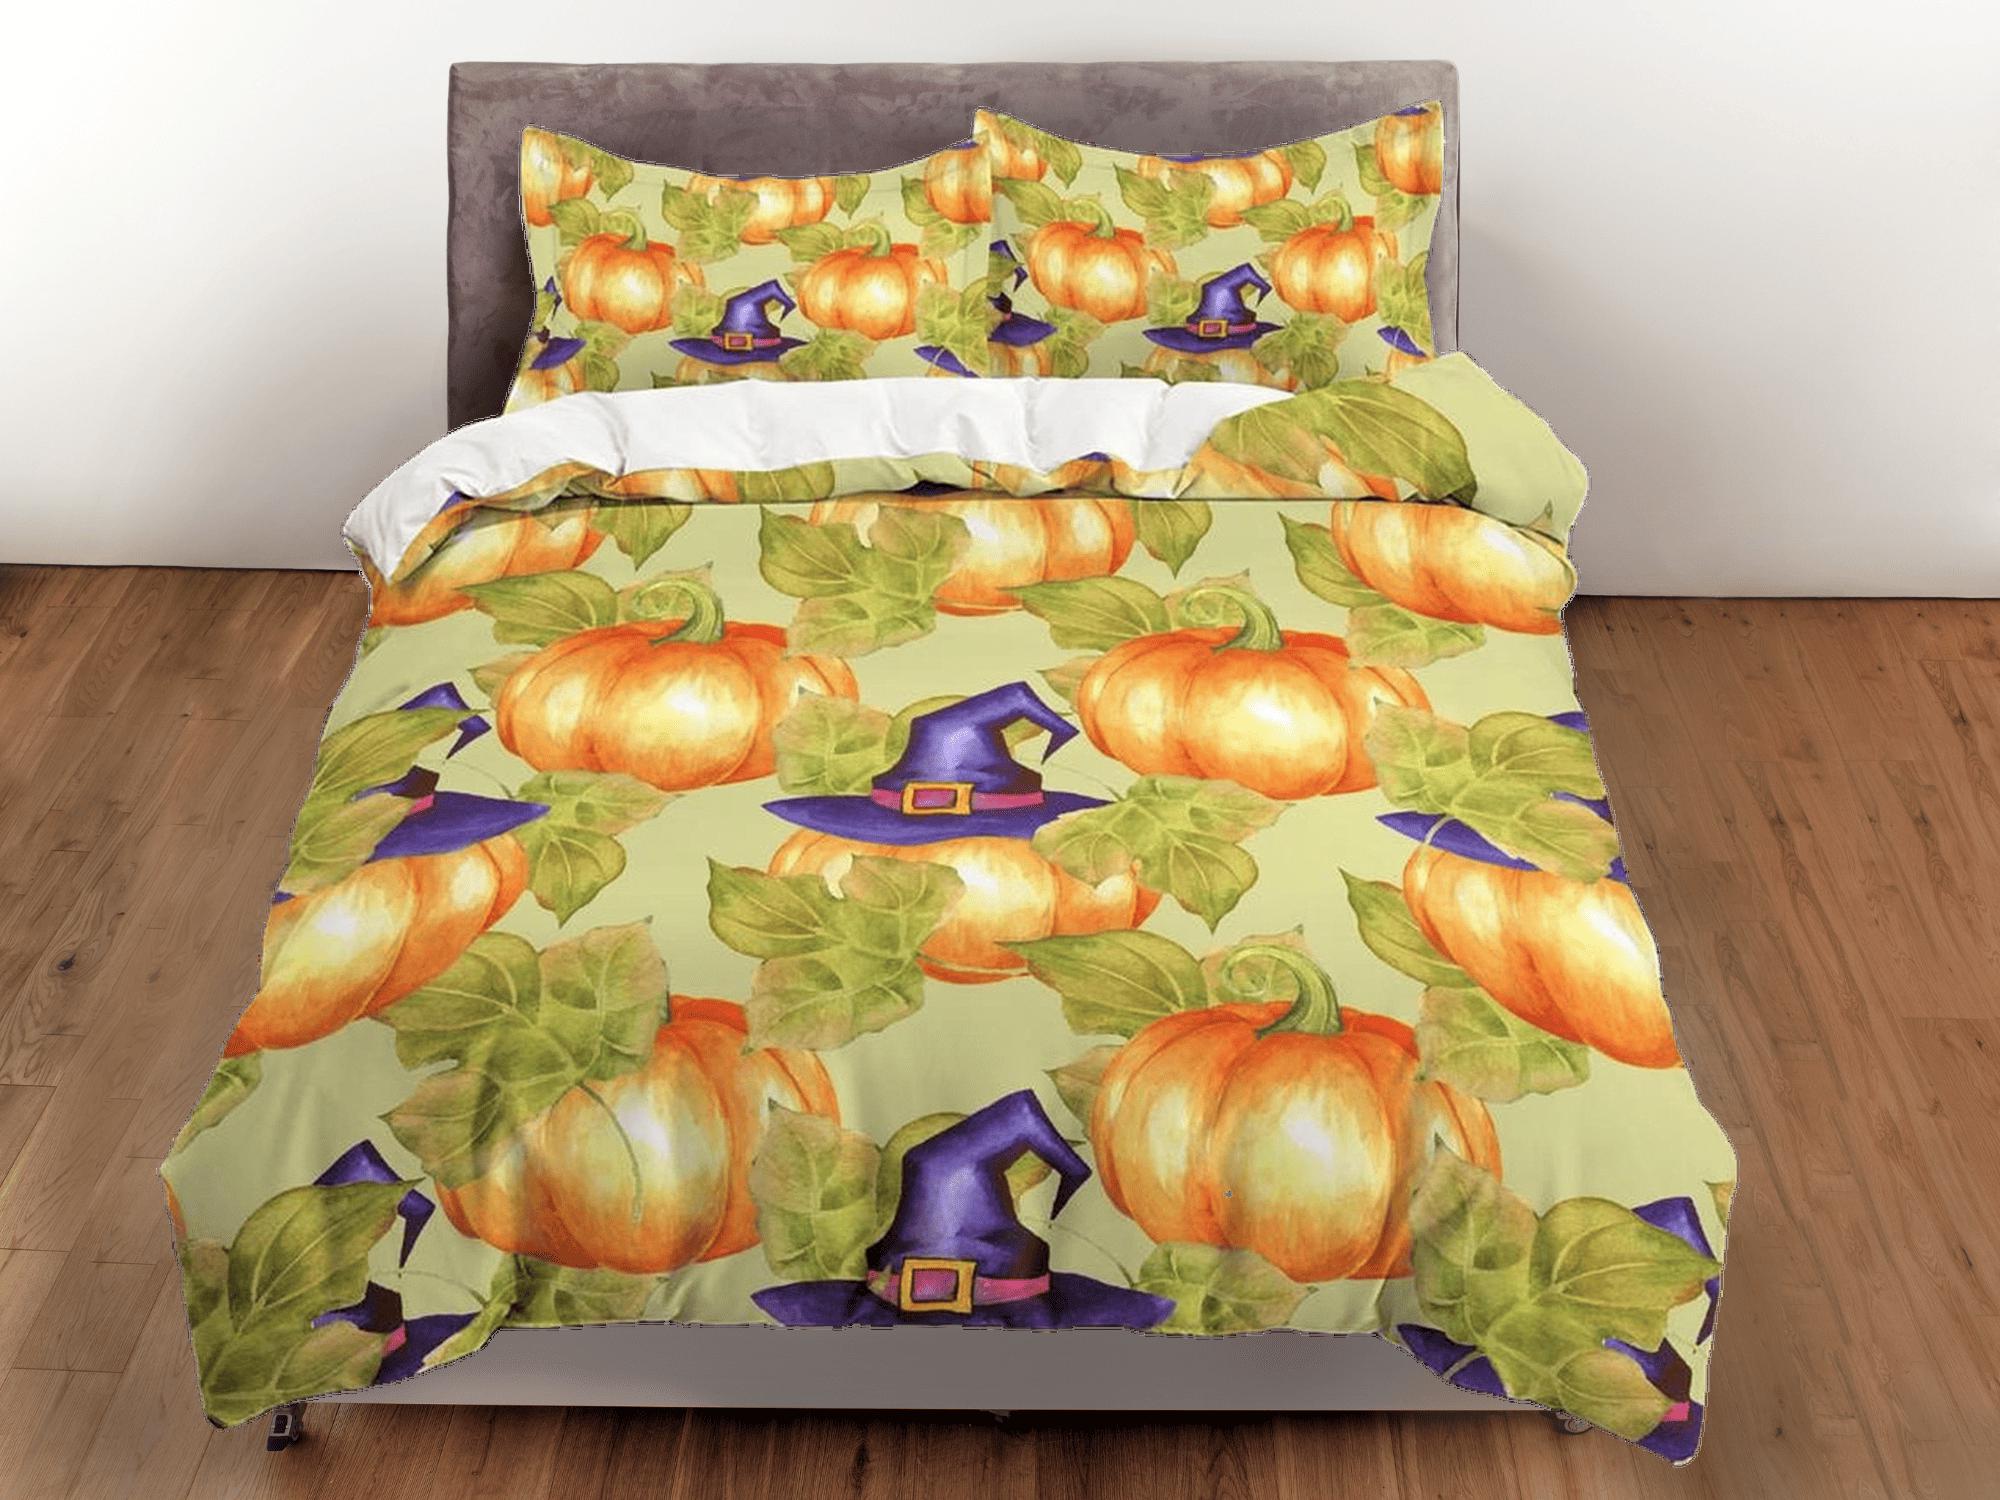 daintyduvet Pumpkin witch vintage halloween bedding & pillowcase, green botanical duvet cover set dorm bedding, nursery toddler bedding, halloween gift